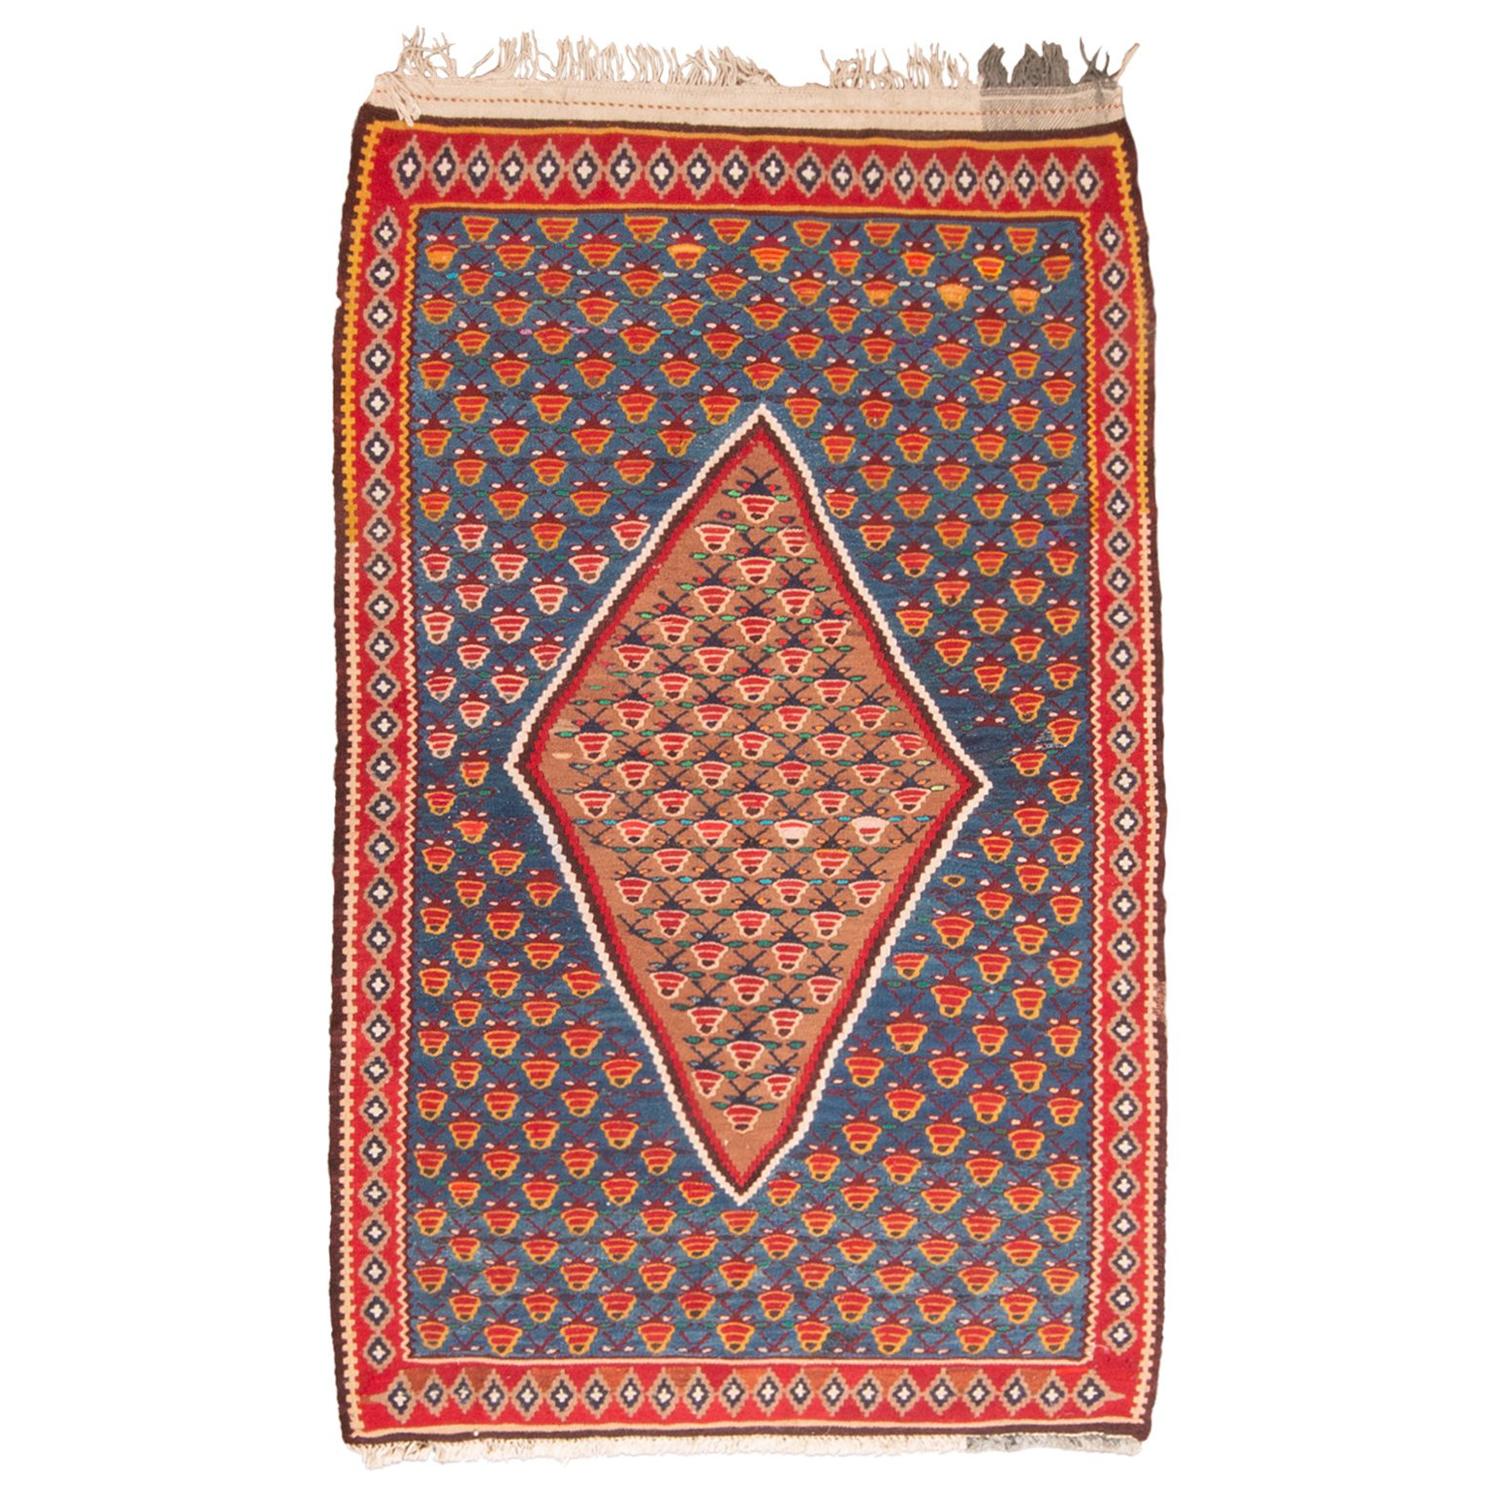 Vintage Midcentury Senneh Red and Blue Persian Kilim Rug